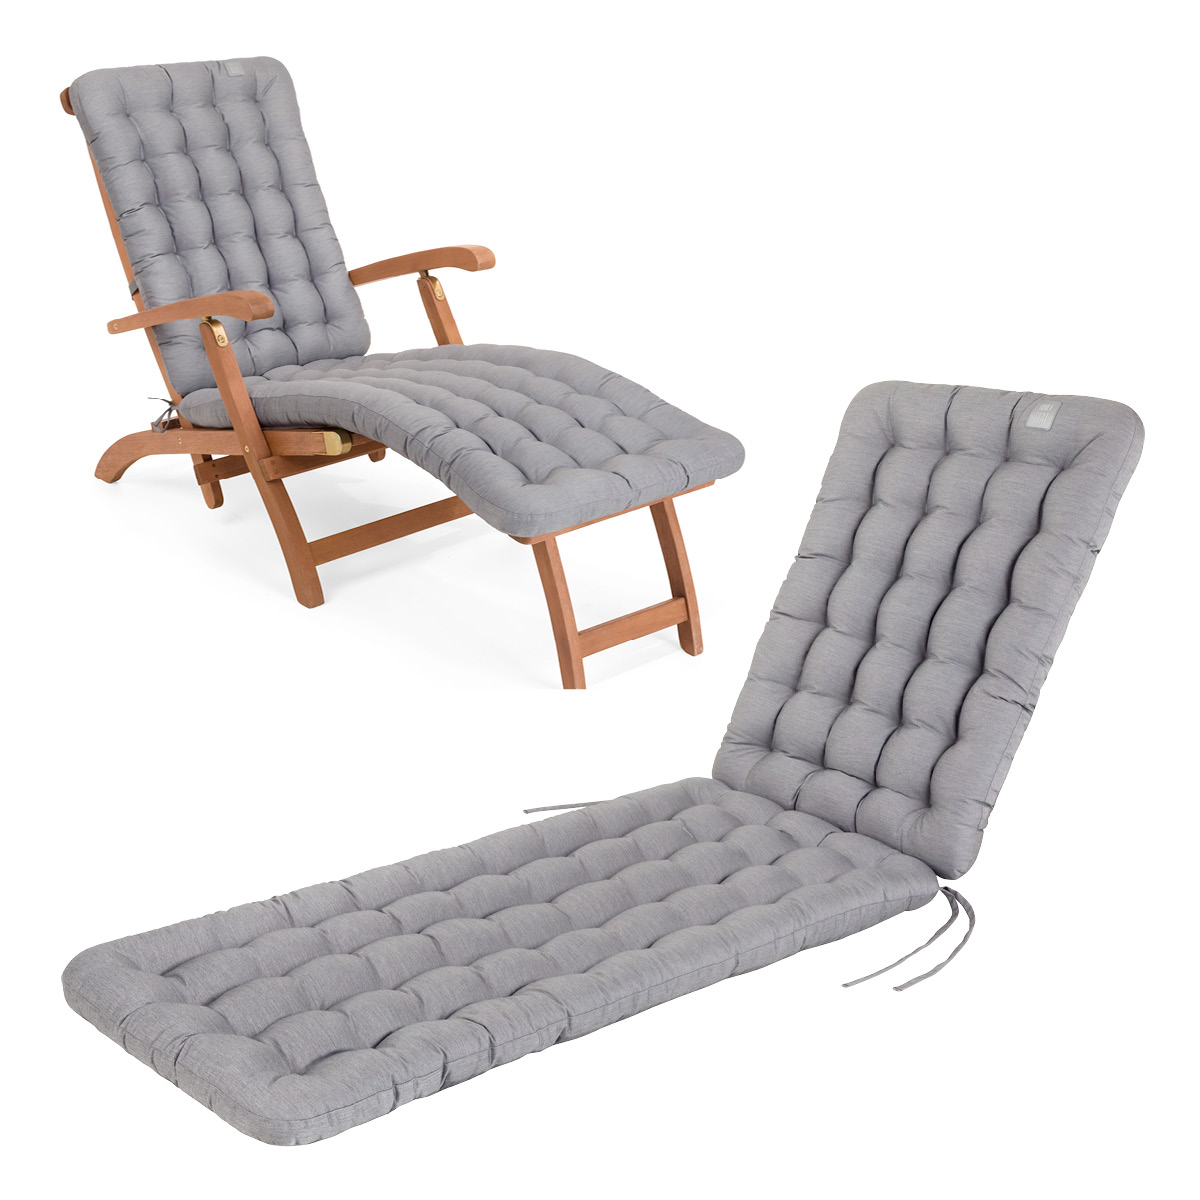 Cuscino per sedia a sdraio | 180x50 cm | Grigio chiaro